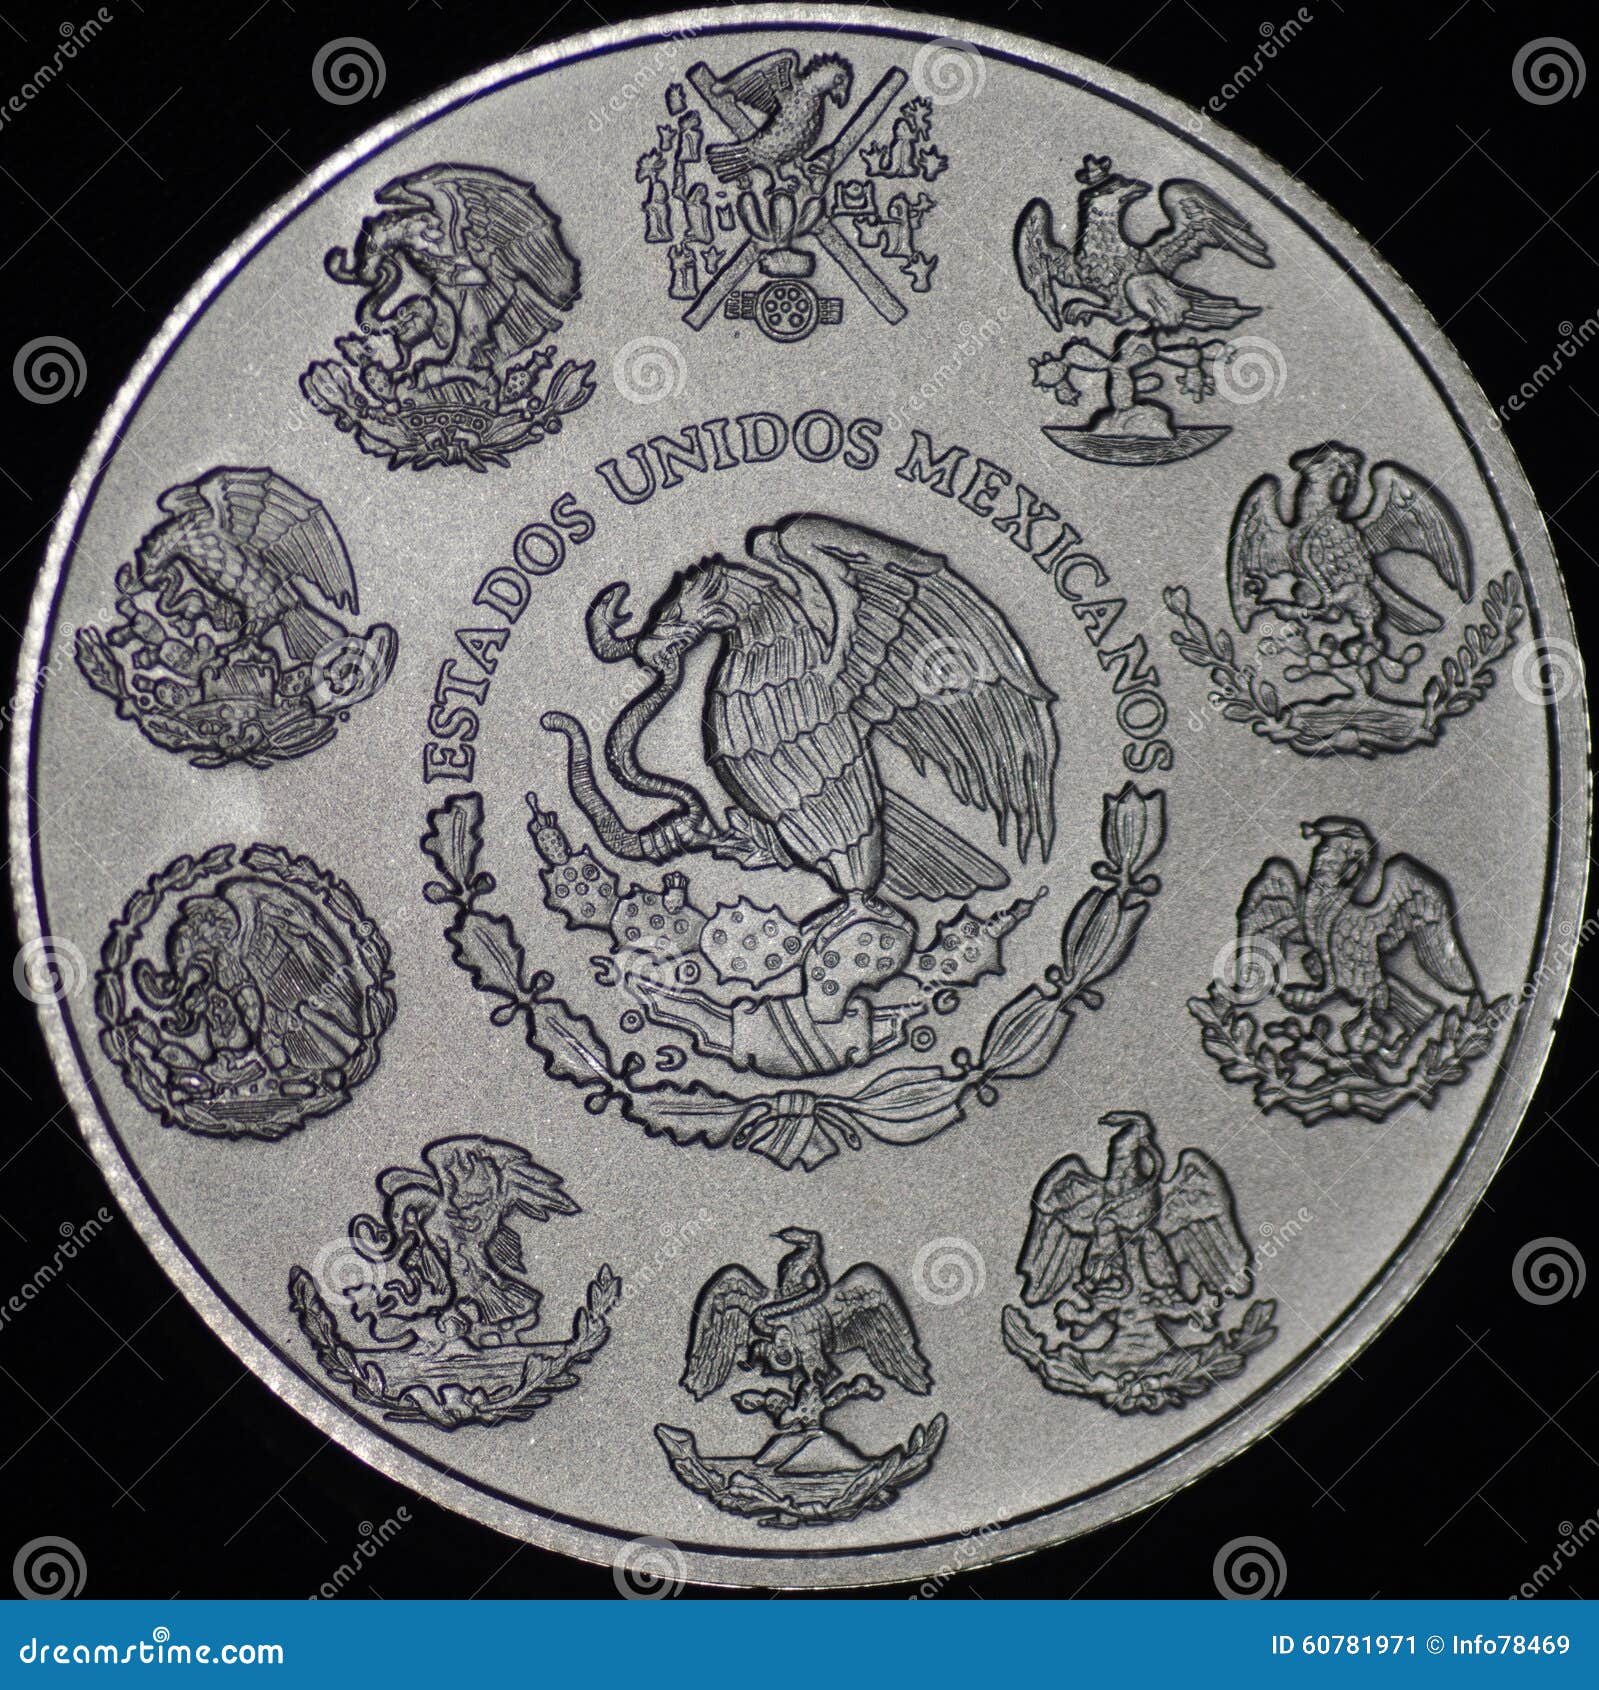 mexican libertad silver coin (reverse)